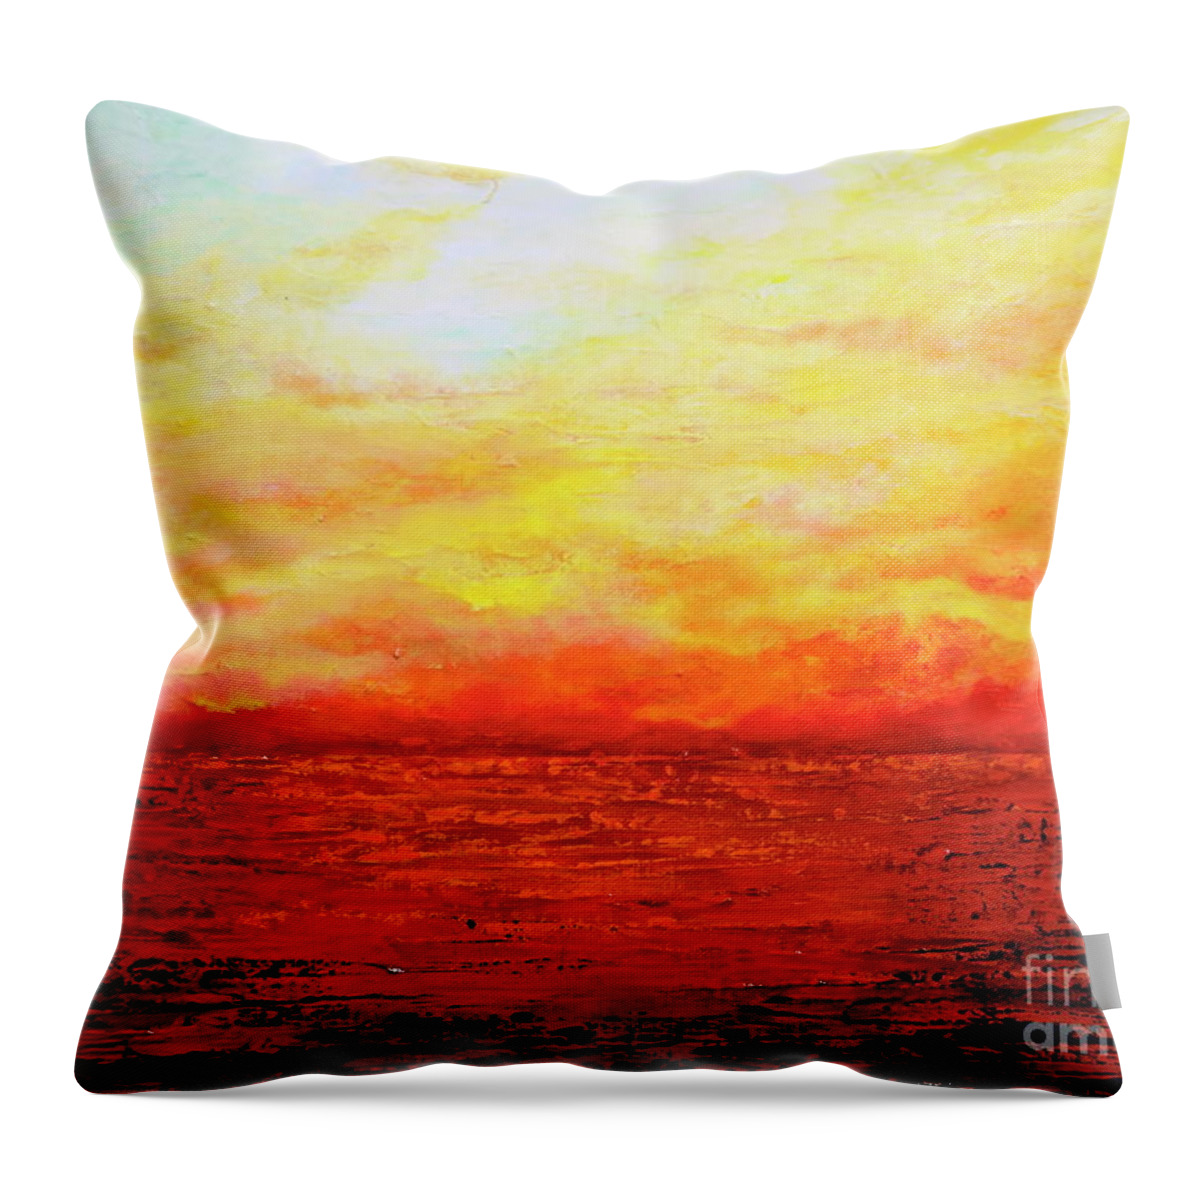 Sunset Throw Pillow featuring the painting Sunburst #1 by Teresa Wegrzyn